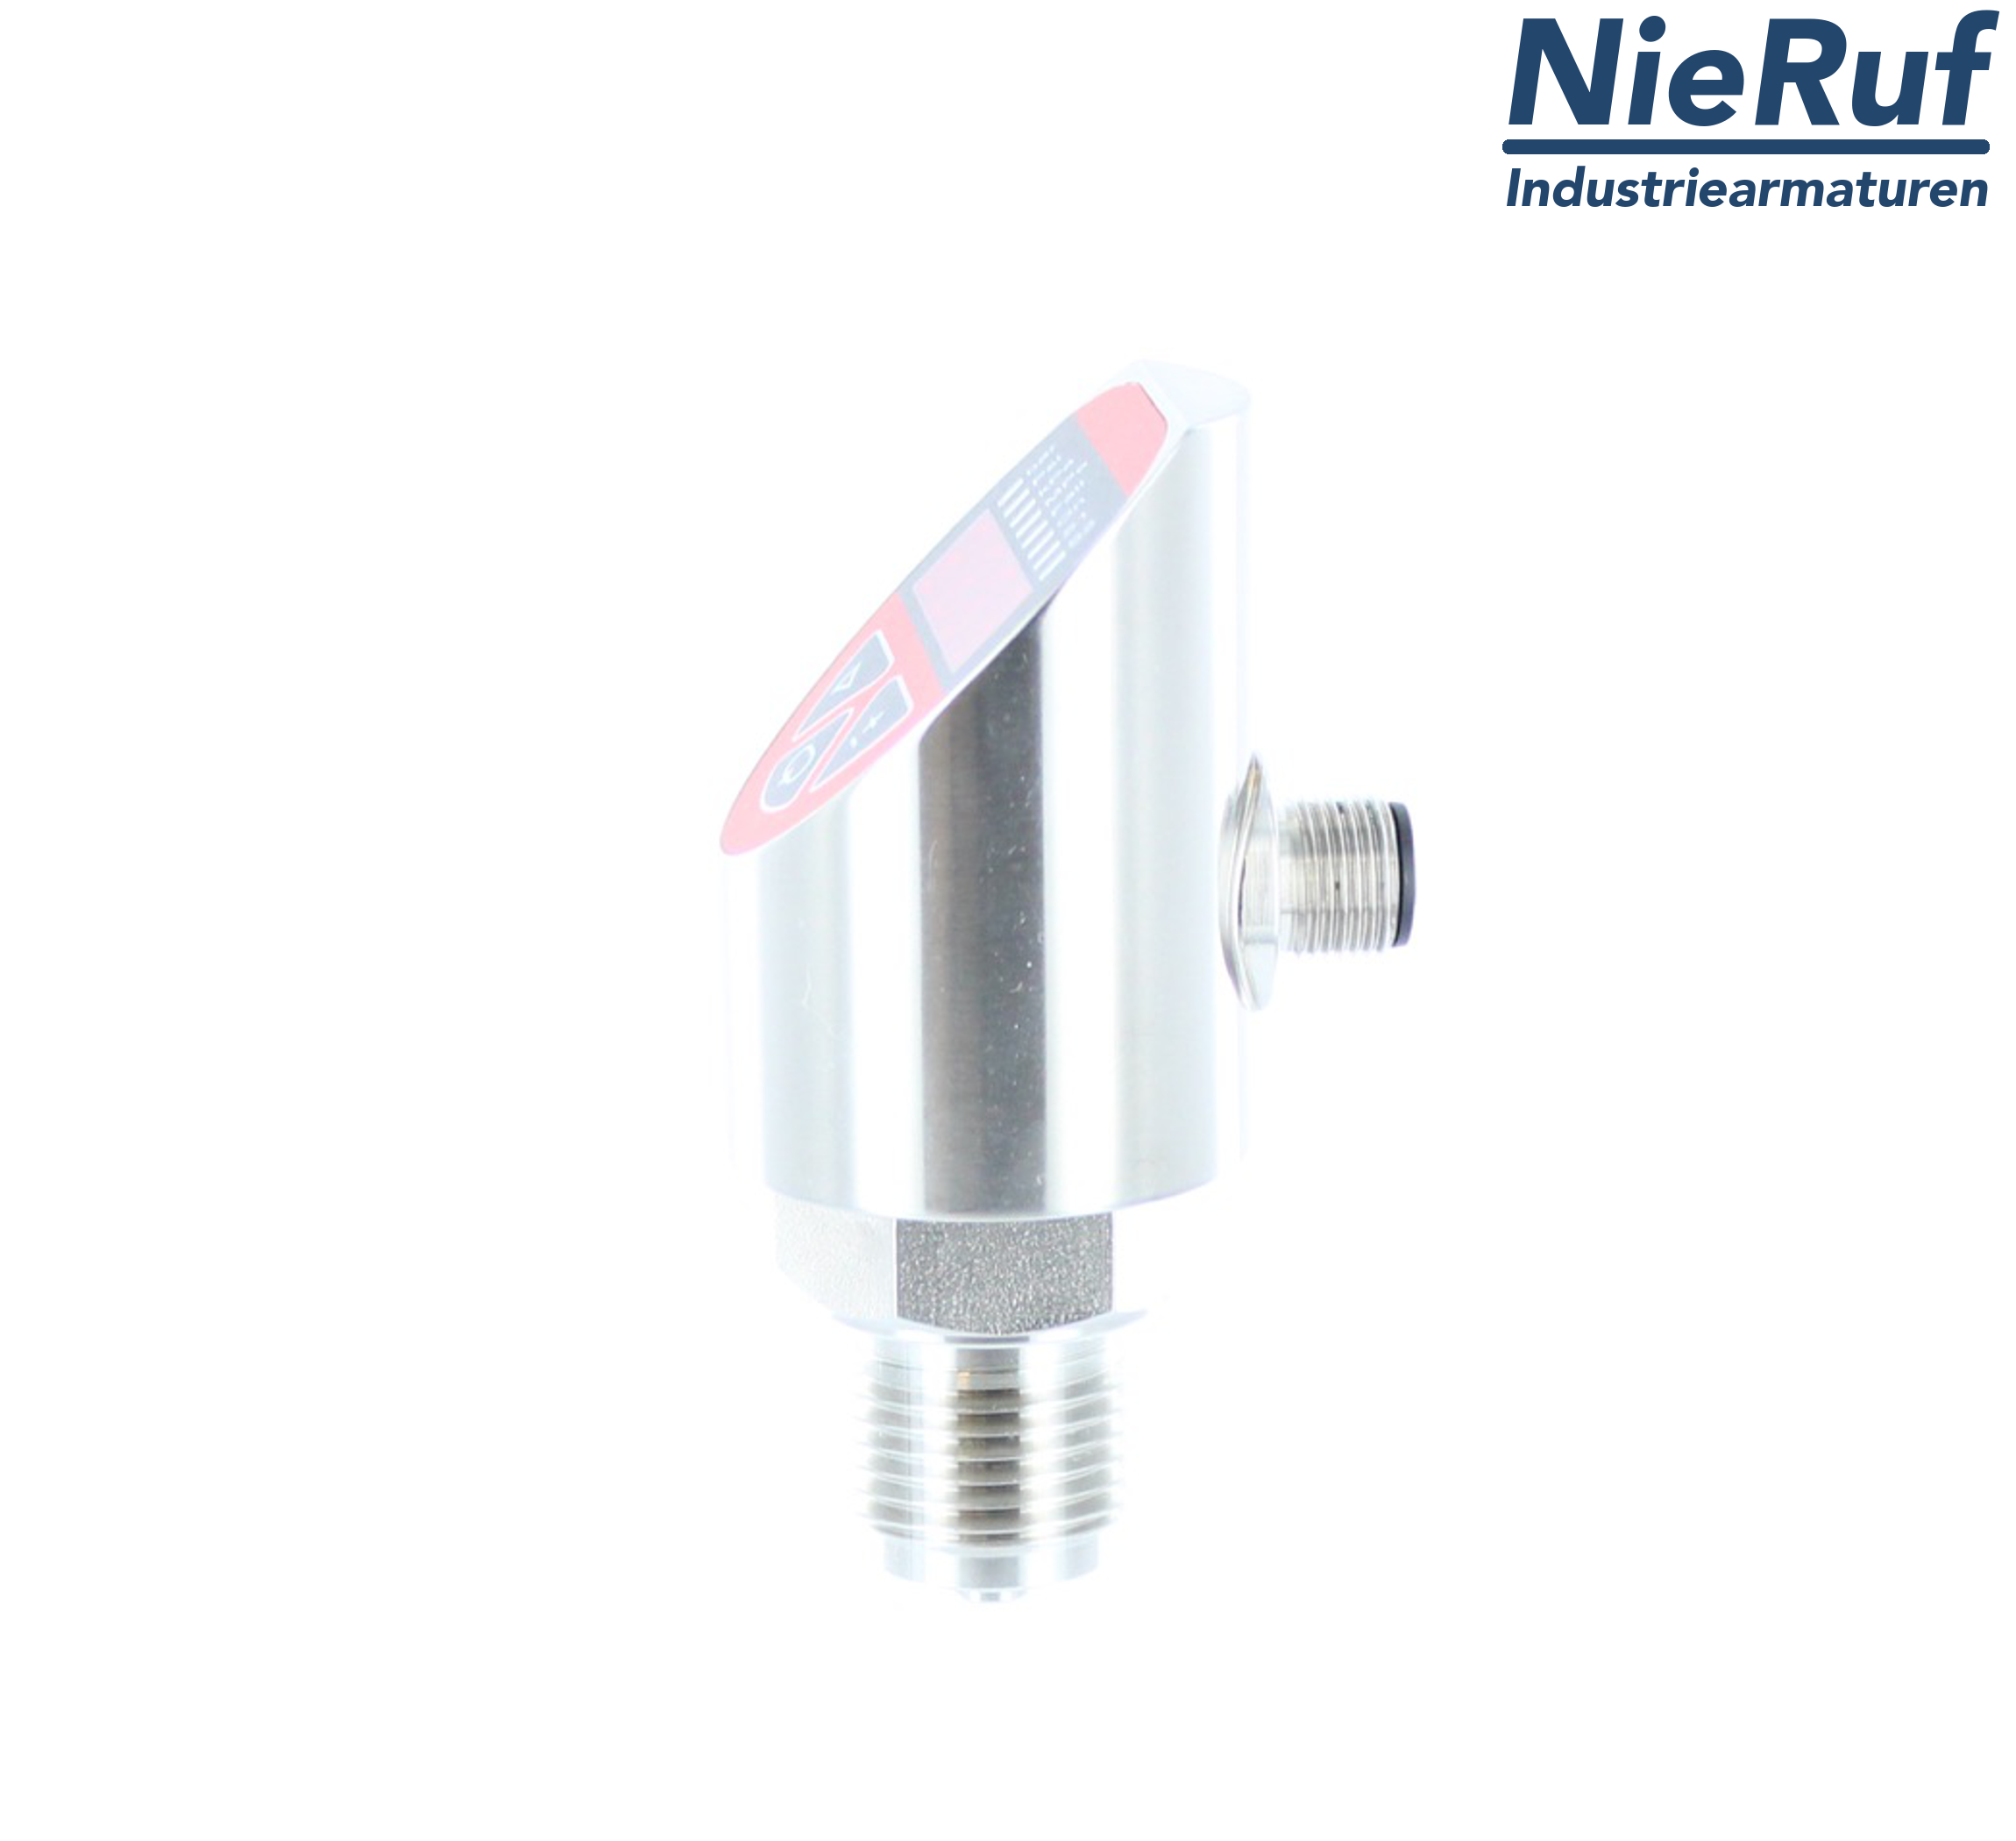 digital pressure sensor G 1/2" B IB 4-wire: 1xPNP, 1x4 - 20mA, Desina FPM 0,0 - 320,0 bar